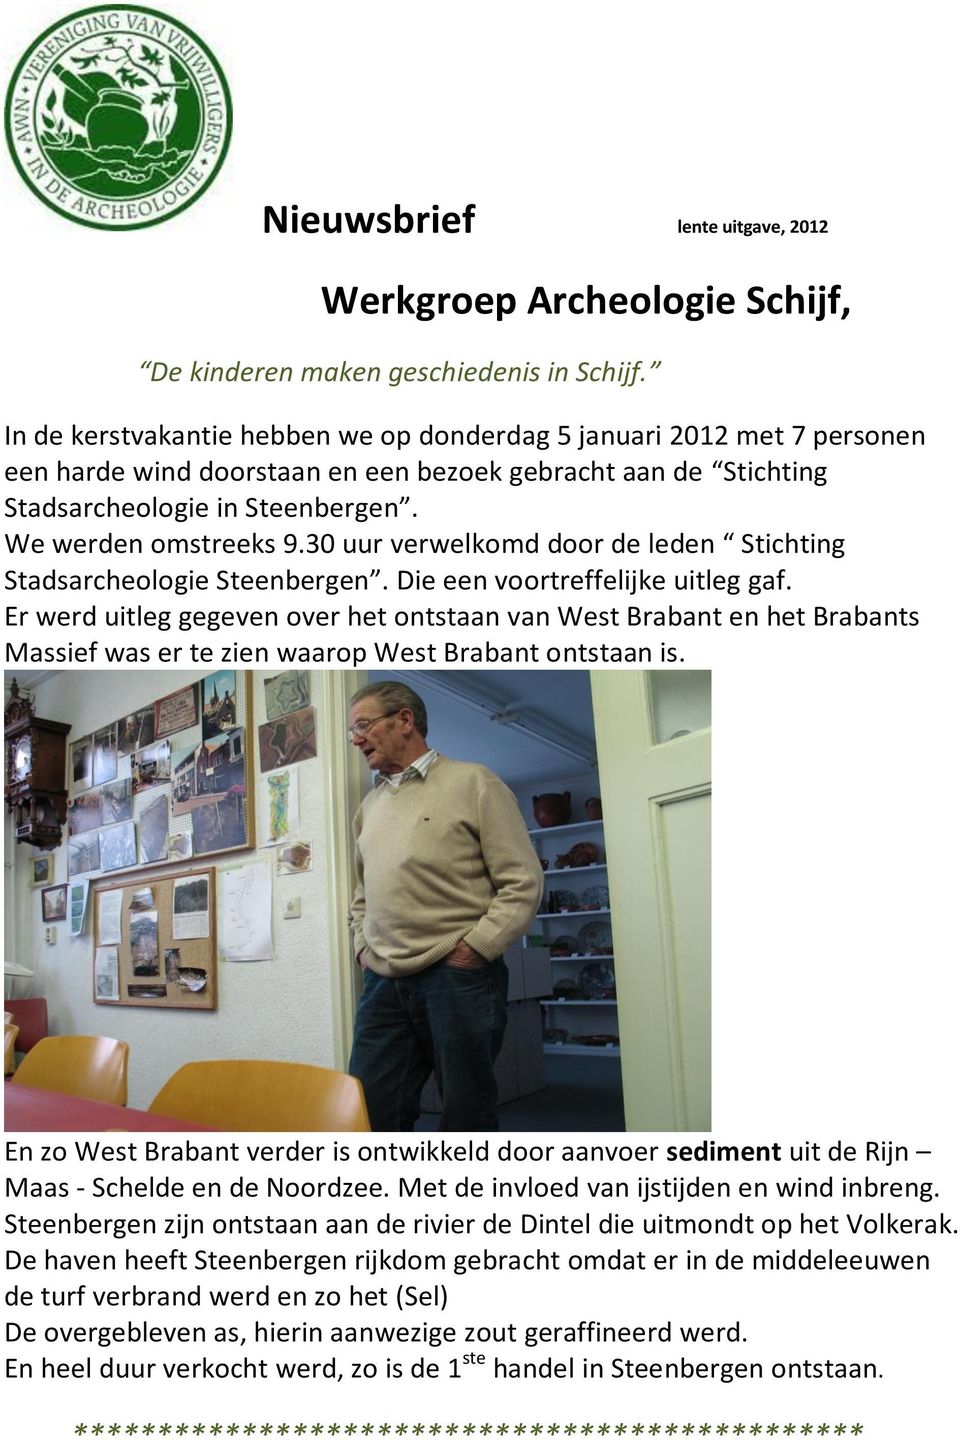 30 uur verwelkomd door de leden Stichting Stadsarcheologie Steenbergen. Die een voortreffelijke uitleg gaf.